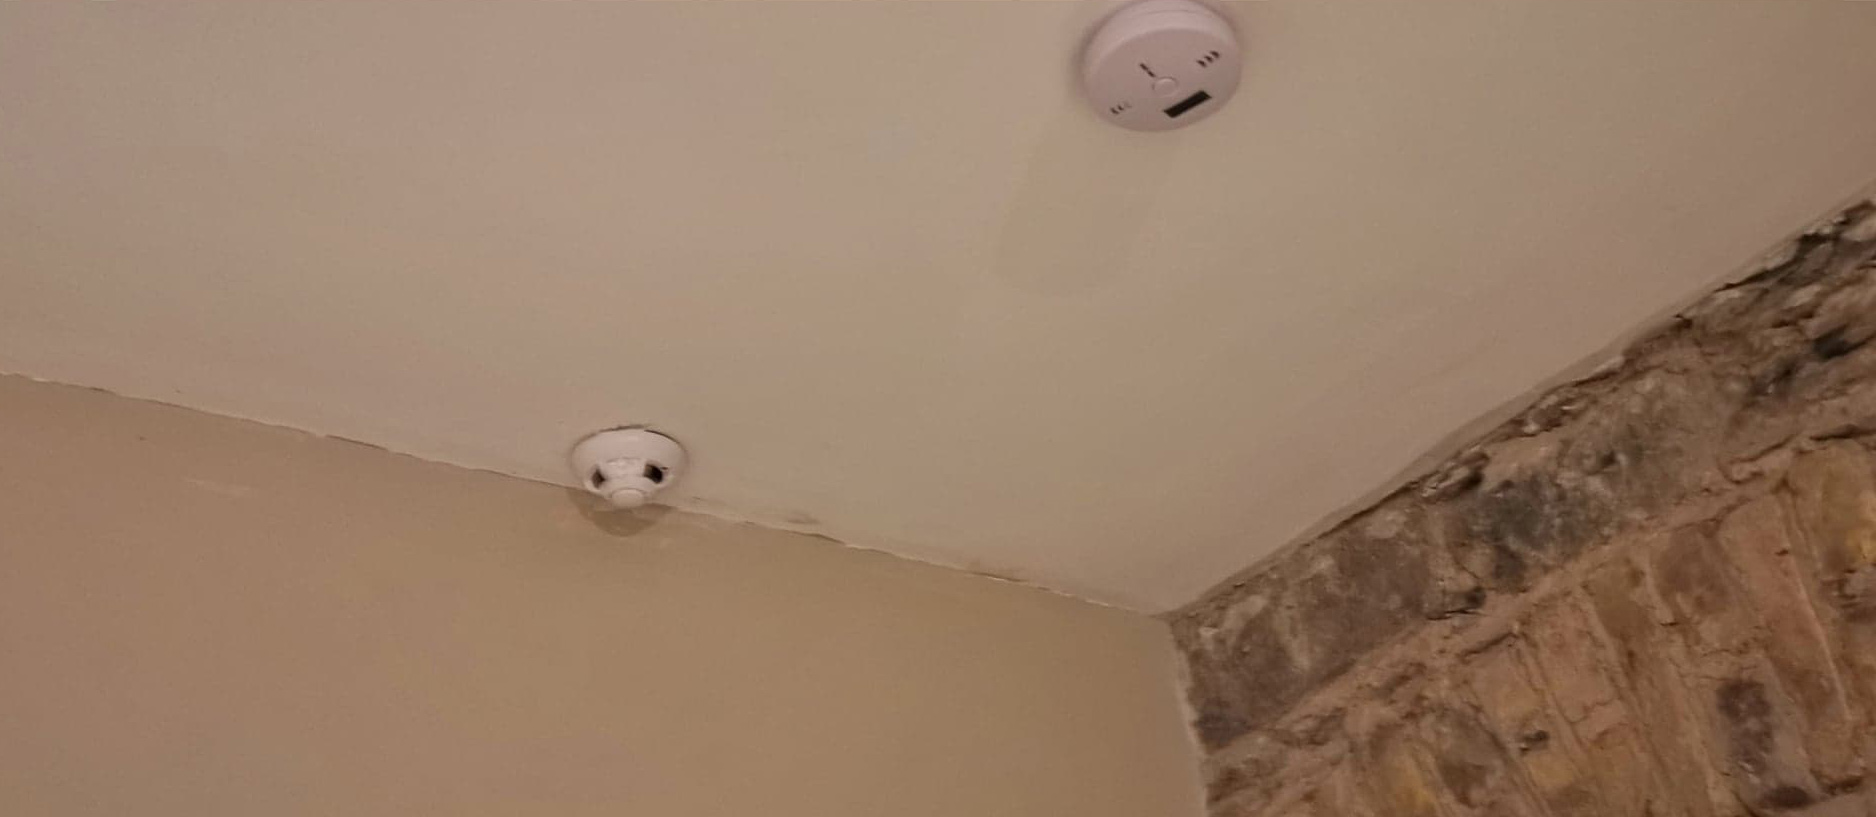 Скрытые камеры в потолке